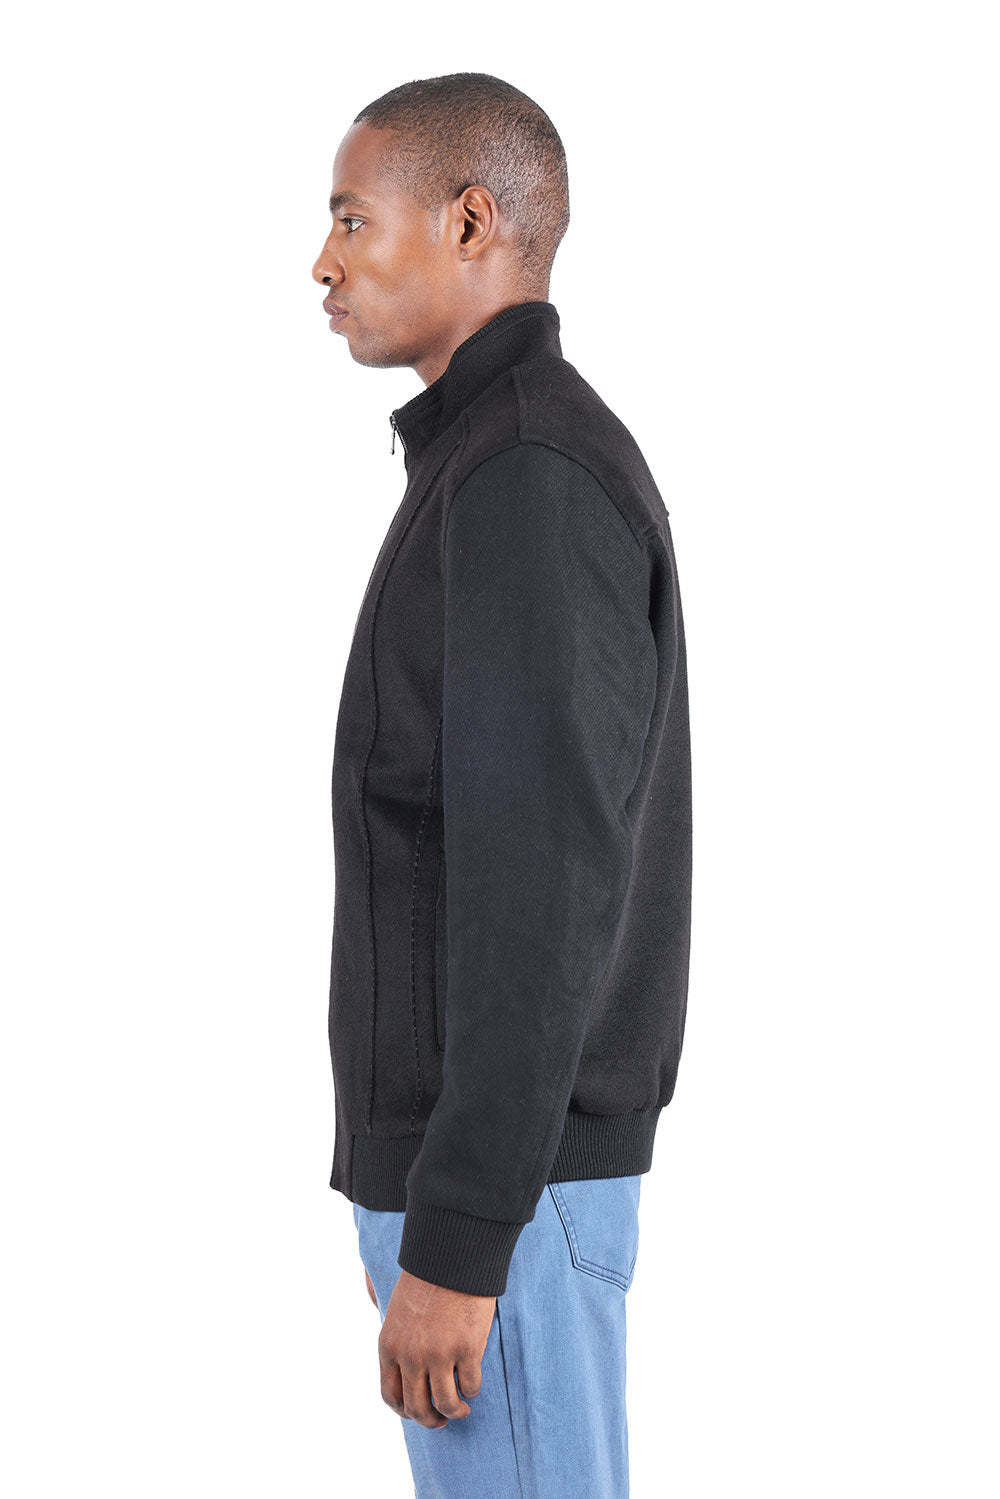 Barabas Men's Suede Warm Comfortable Varsity Jacket 3BH84 Black